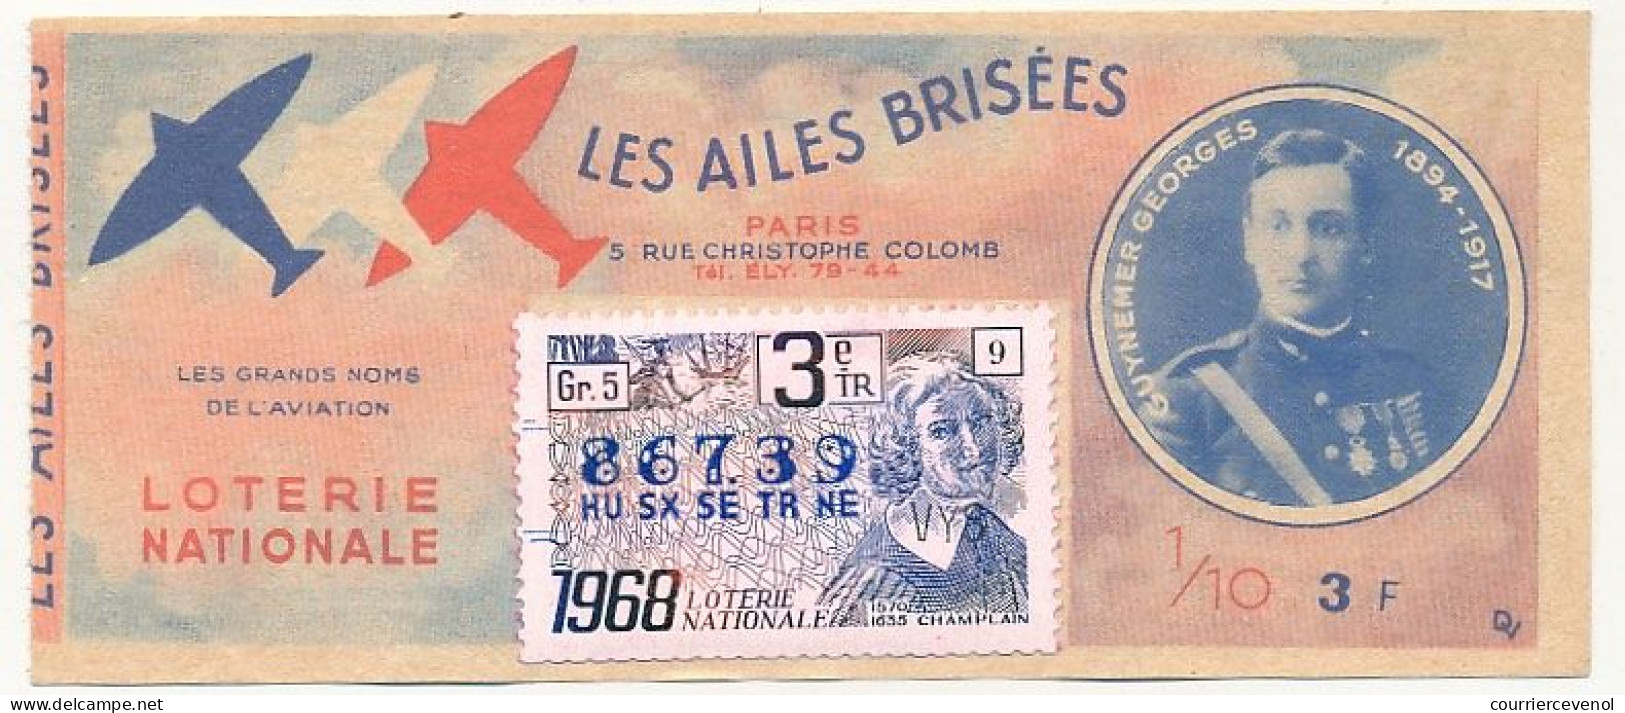 FRANCE - Loterie Nationale - 1/10ème - Les Ailes Brisées - Grands Noms De L'Aviation - Guynemer Georges - 3èm Tr 1968 - Loterijbiljetten